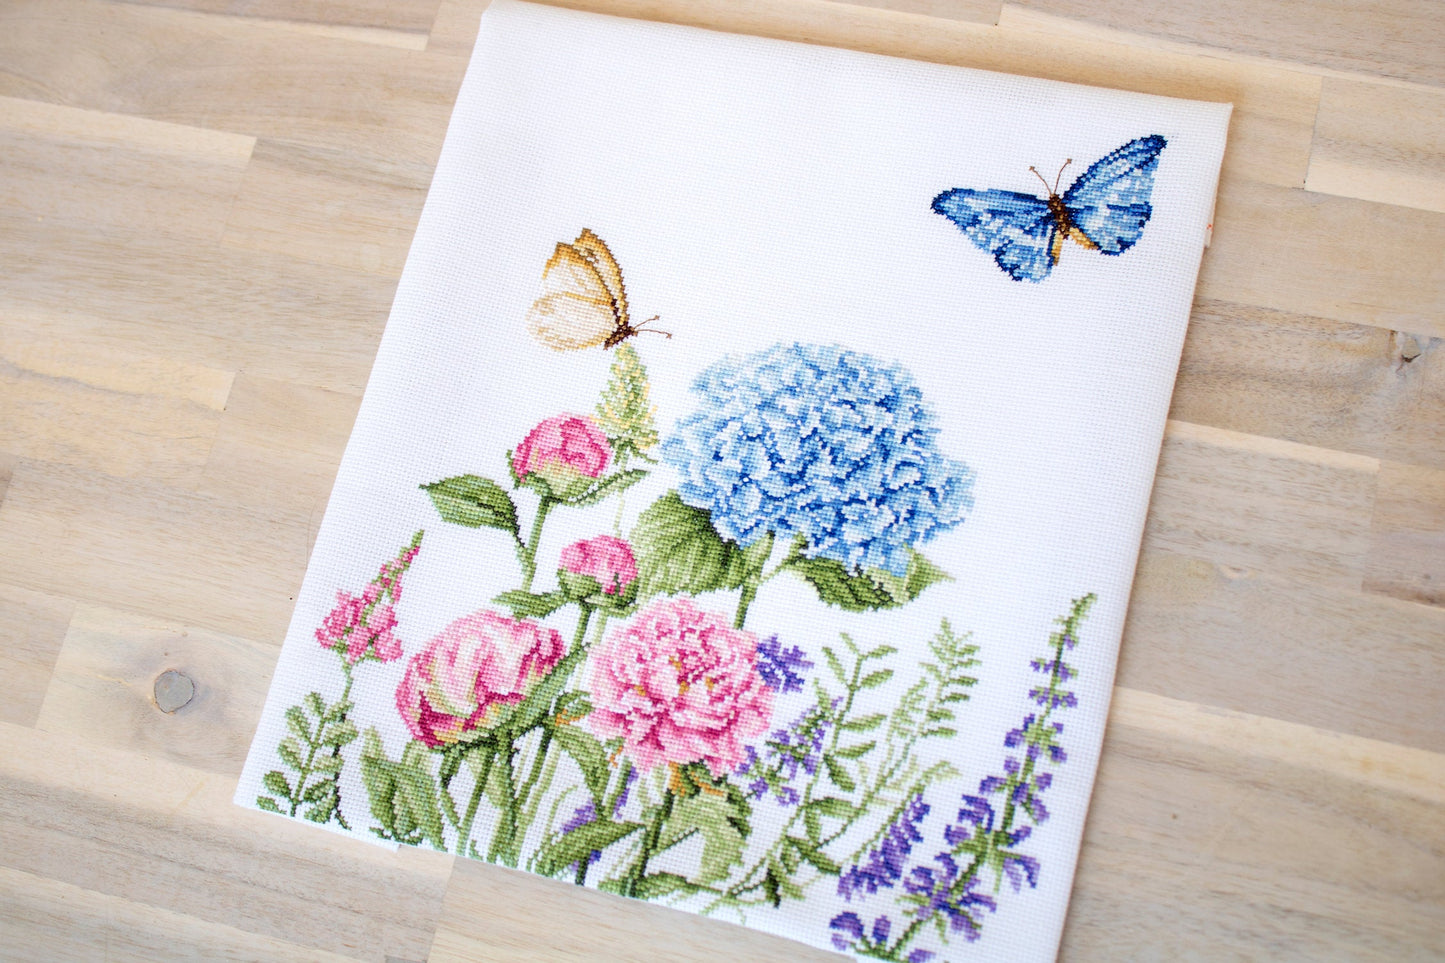 Набор для вышивки крестом Luca-S - B2360 Летние цветы и бабочки